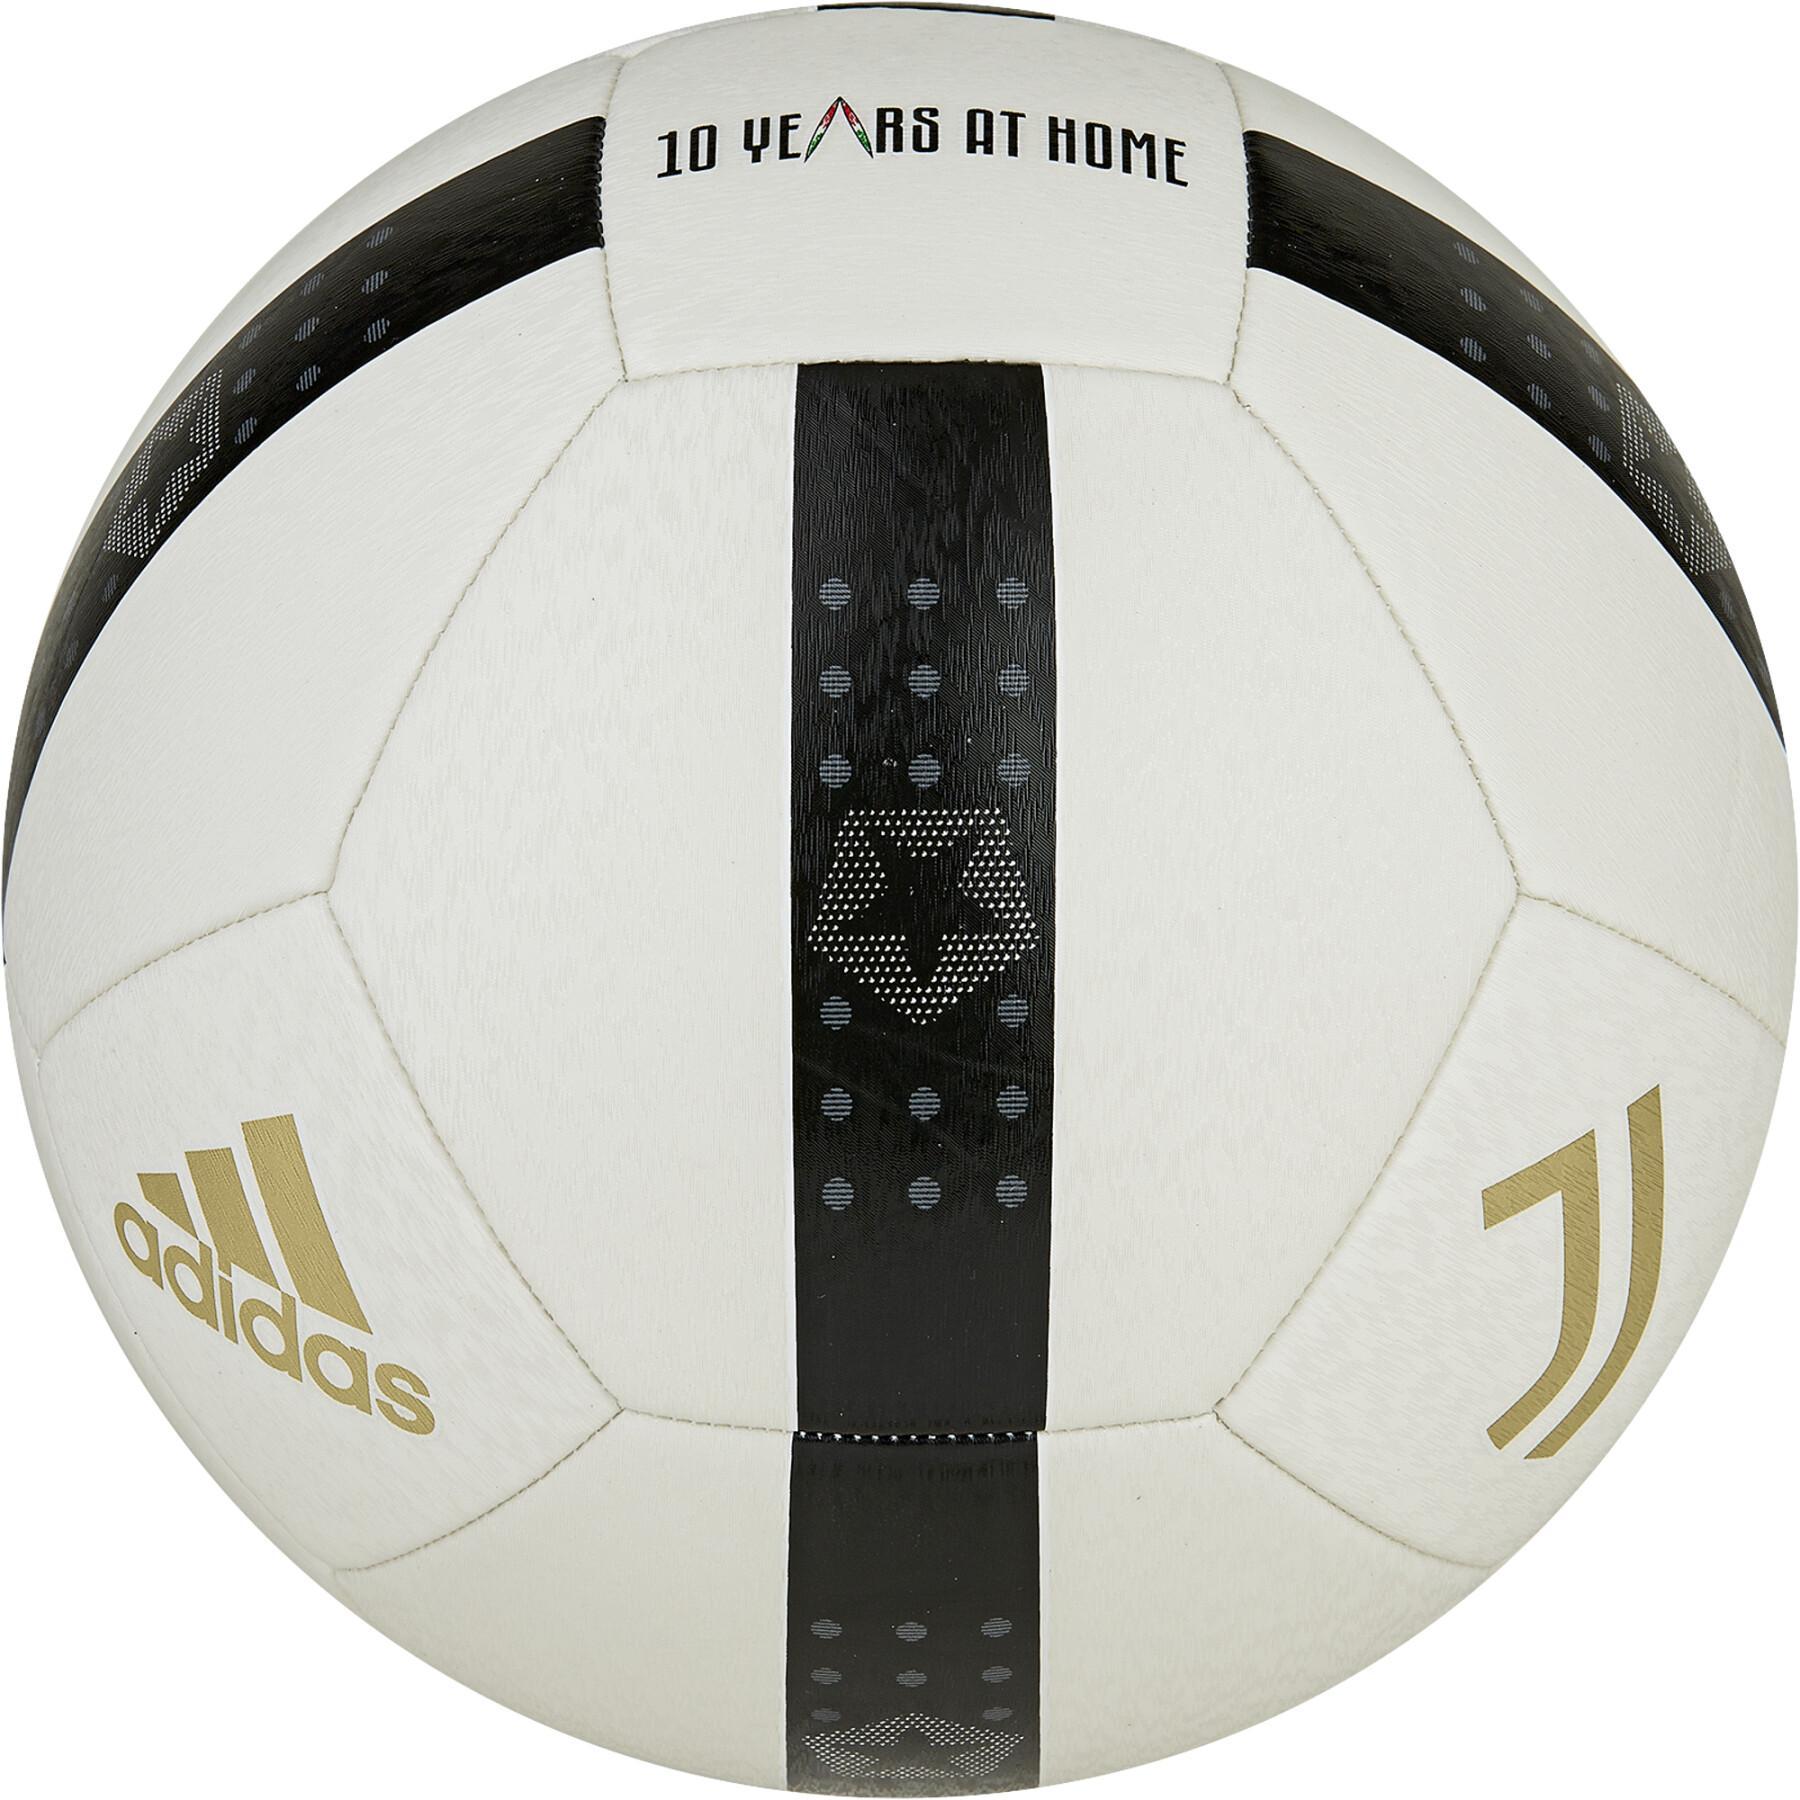 Balloon Juventus